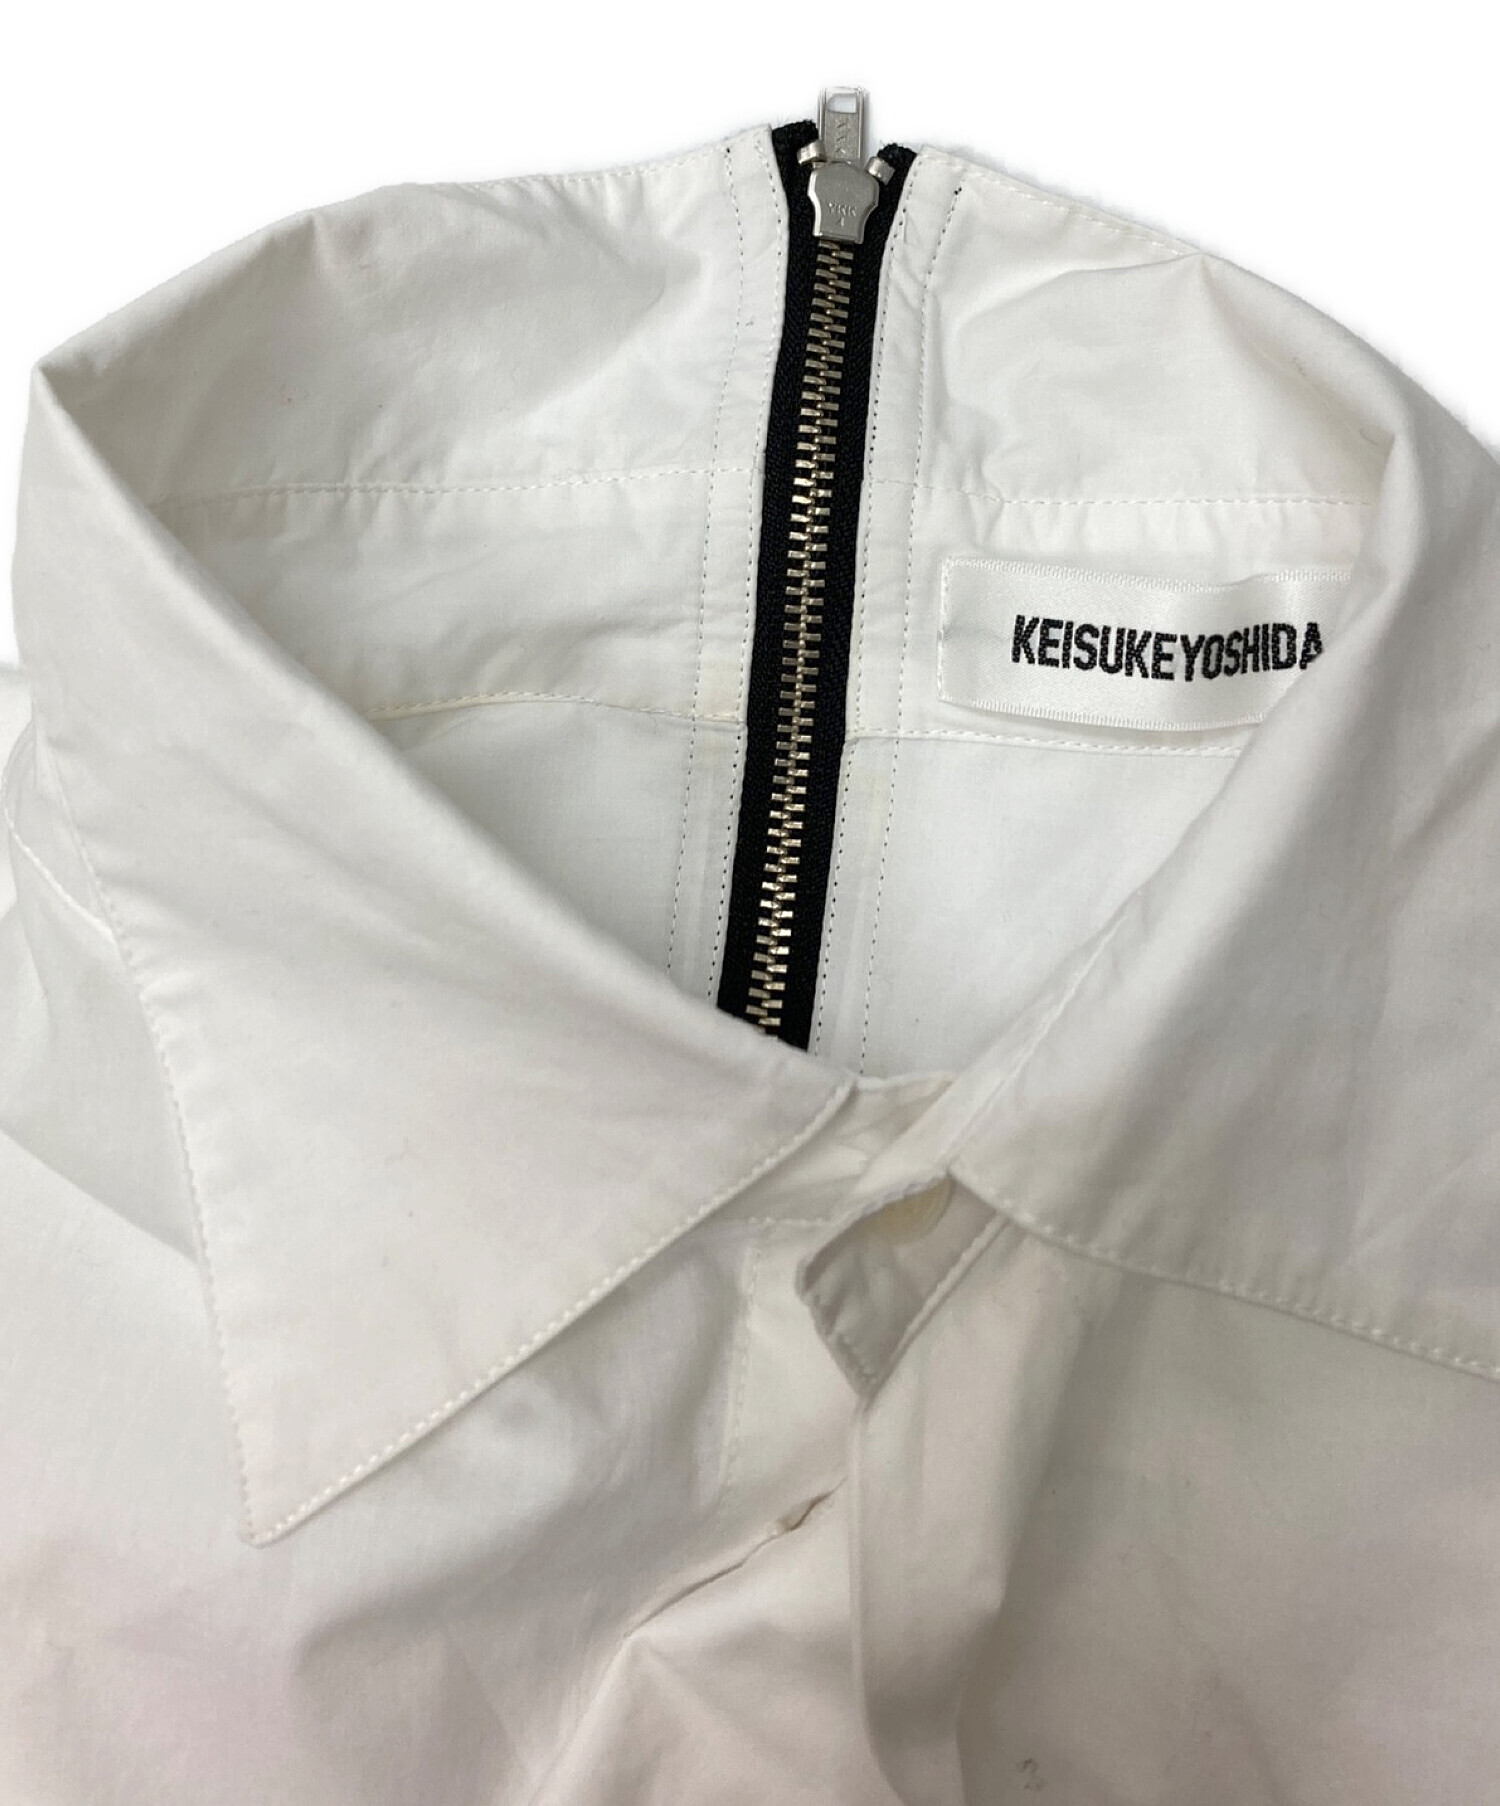 KEISUKE YOSHIDA (ケイスケヨシダ) Ribbon Shirt ホワイト サイズ:F